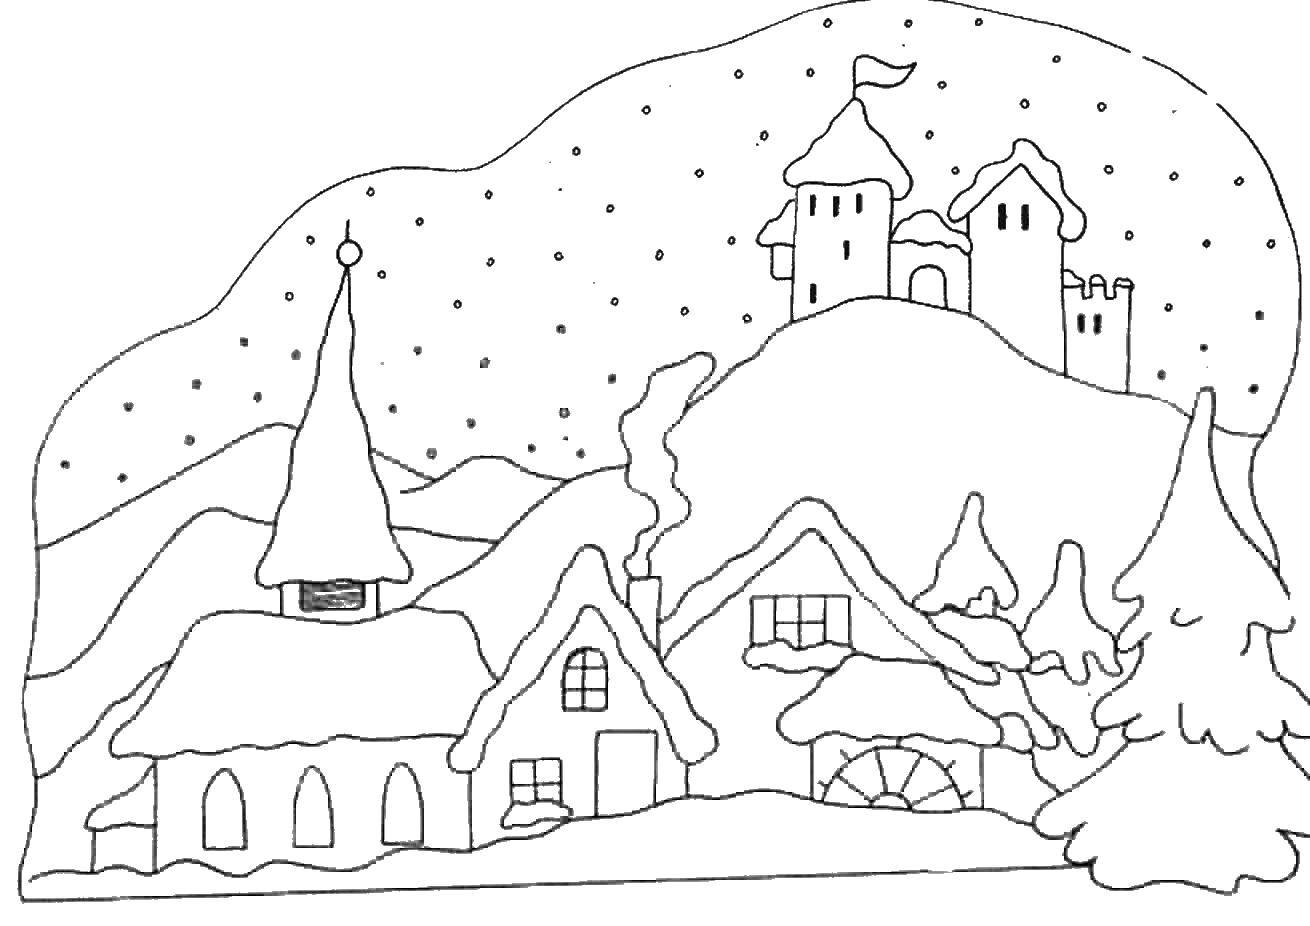 Бесплатные раскраски на зимнюю тематику для детей - Зима, первый снег, радость и город (радость, город)